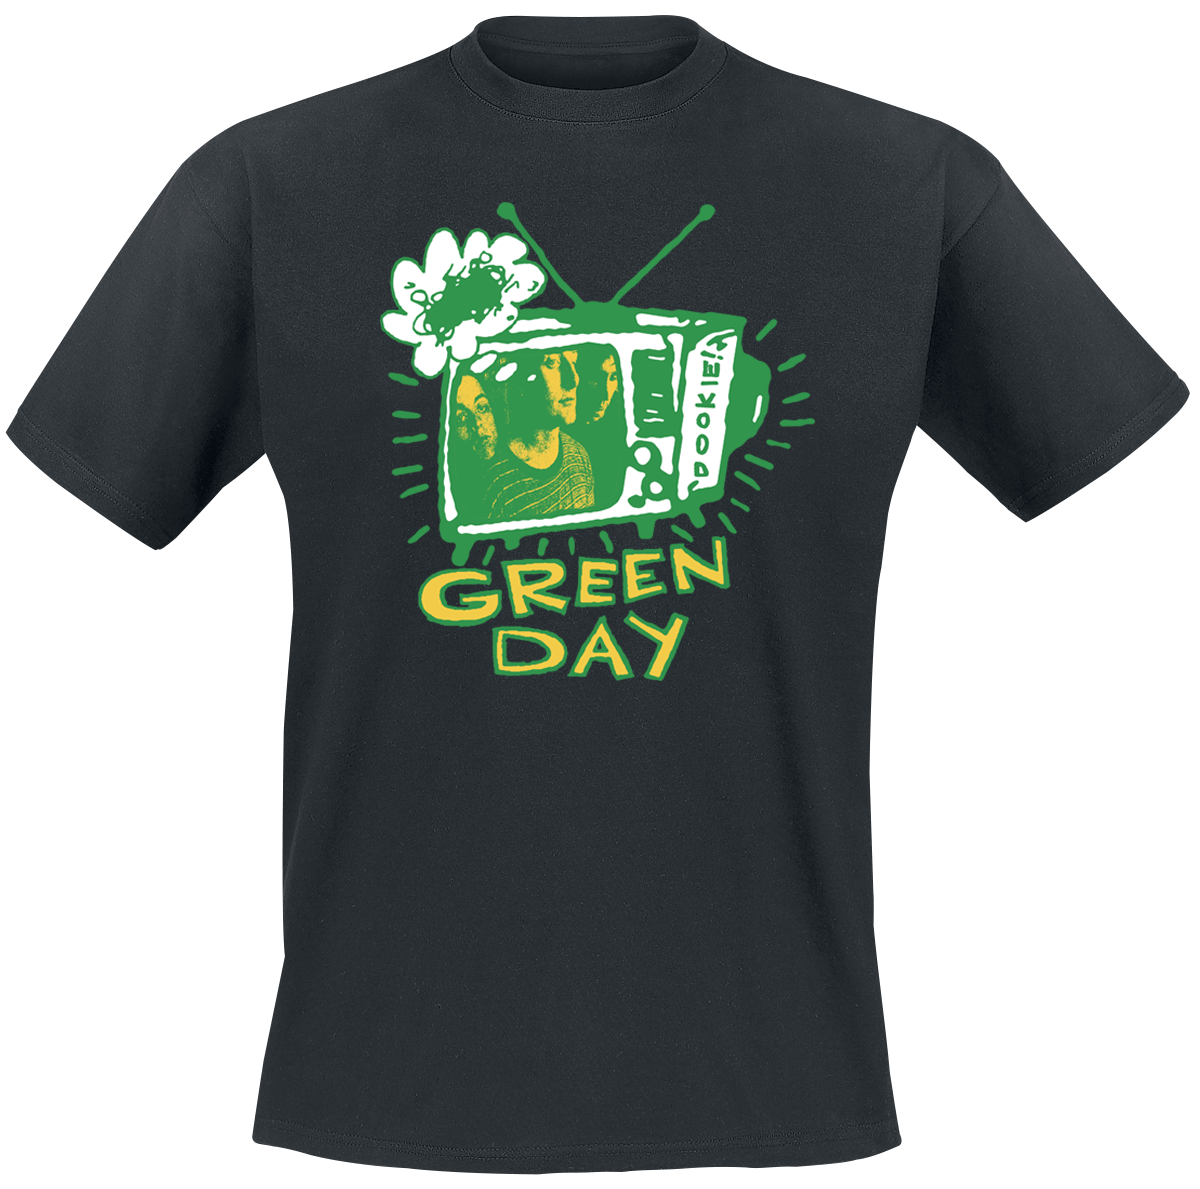 Green Day - Longview TV - T-Shirt - schwarz